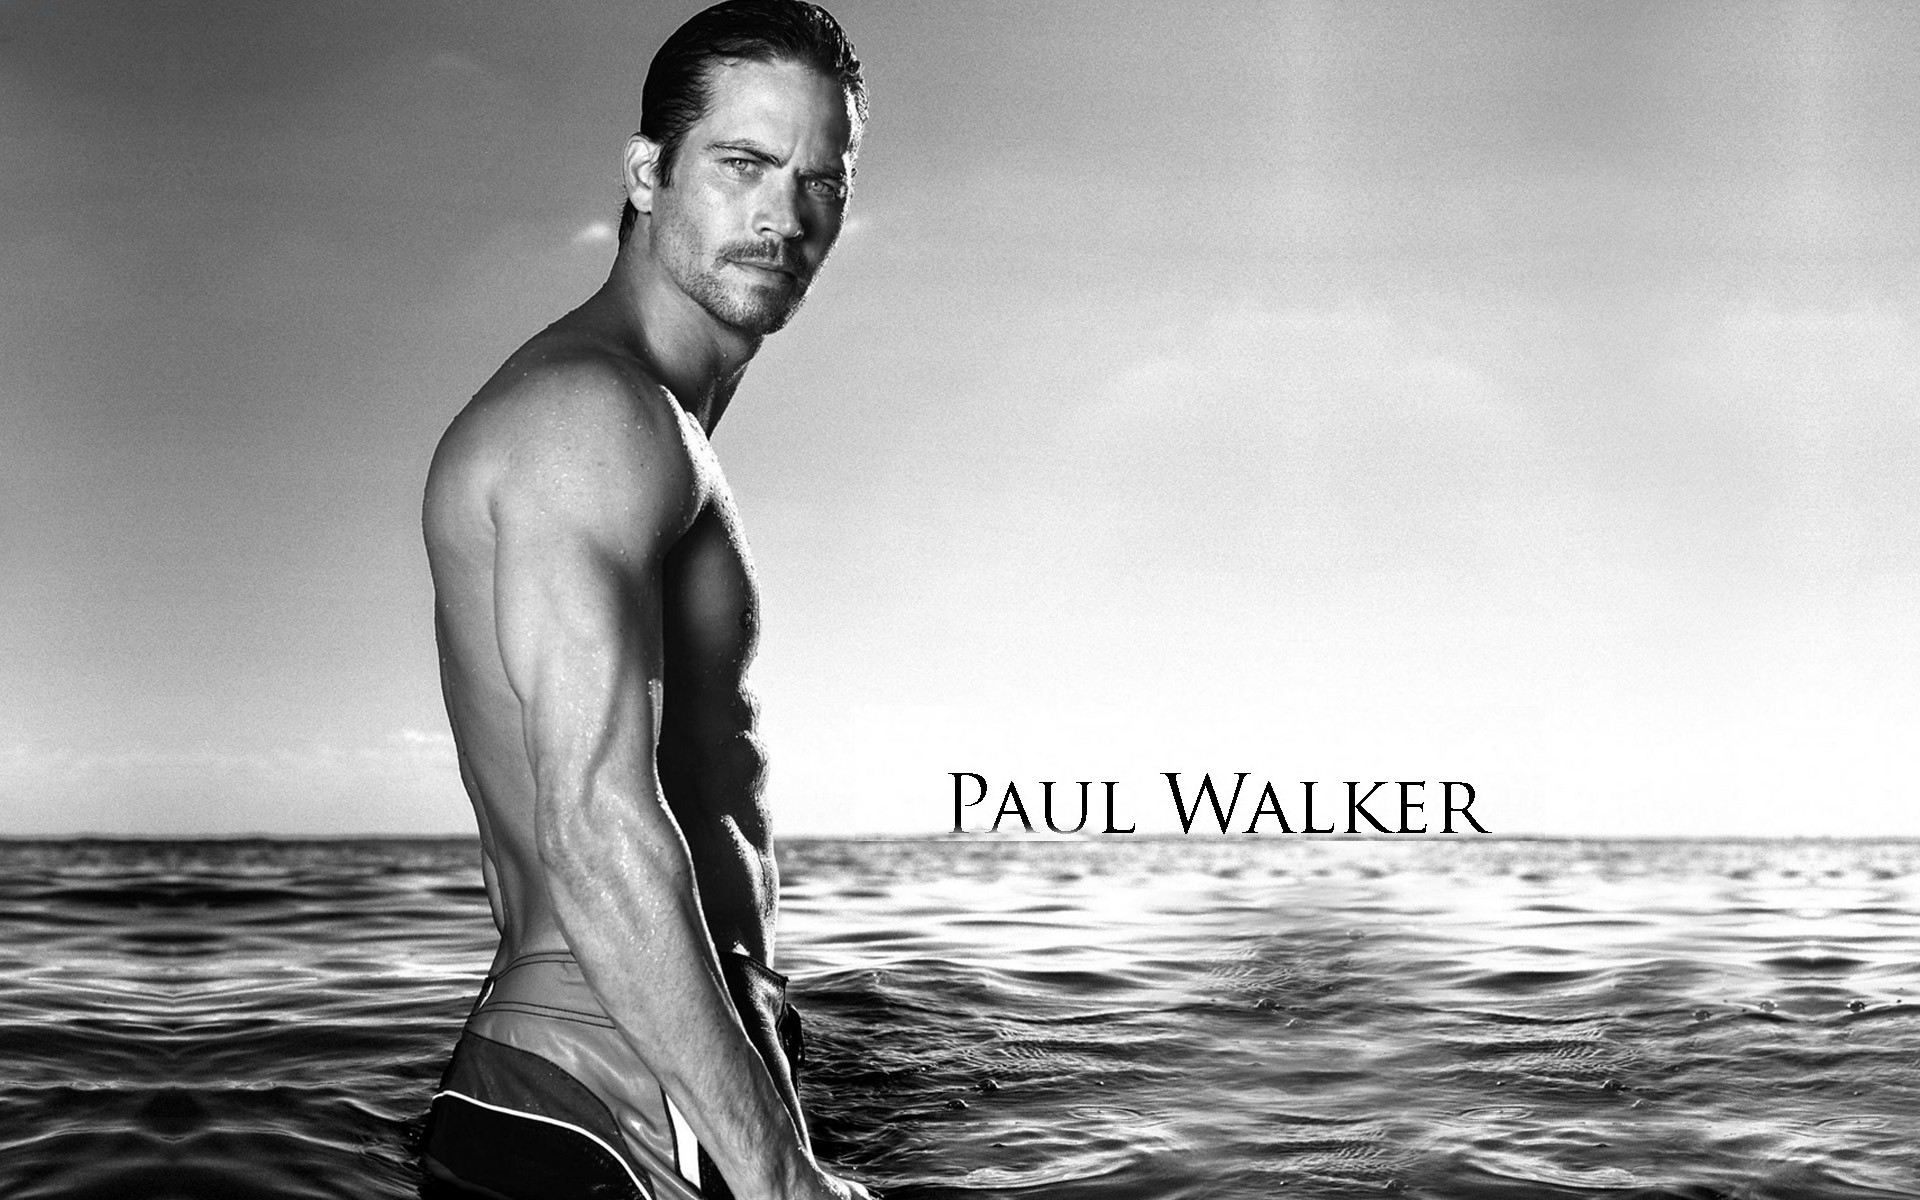 Paul Walker Hd Wallpaper Full HD Wallpapers Pinterest Paul walker pictures, Paul walker and Hd wallpaper